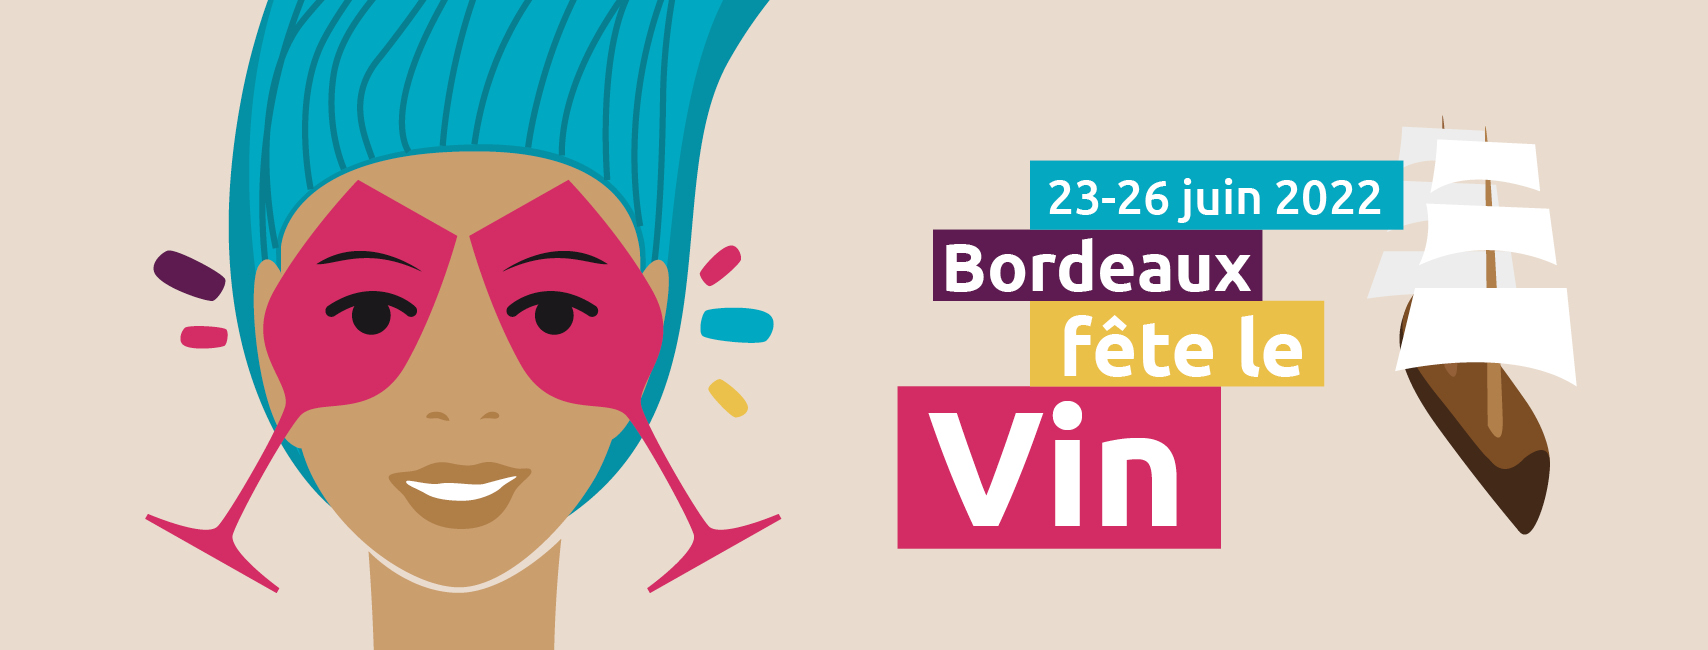 Bordeaux Wine Festival 2022